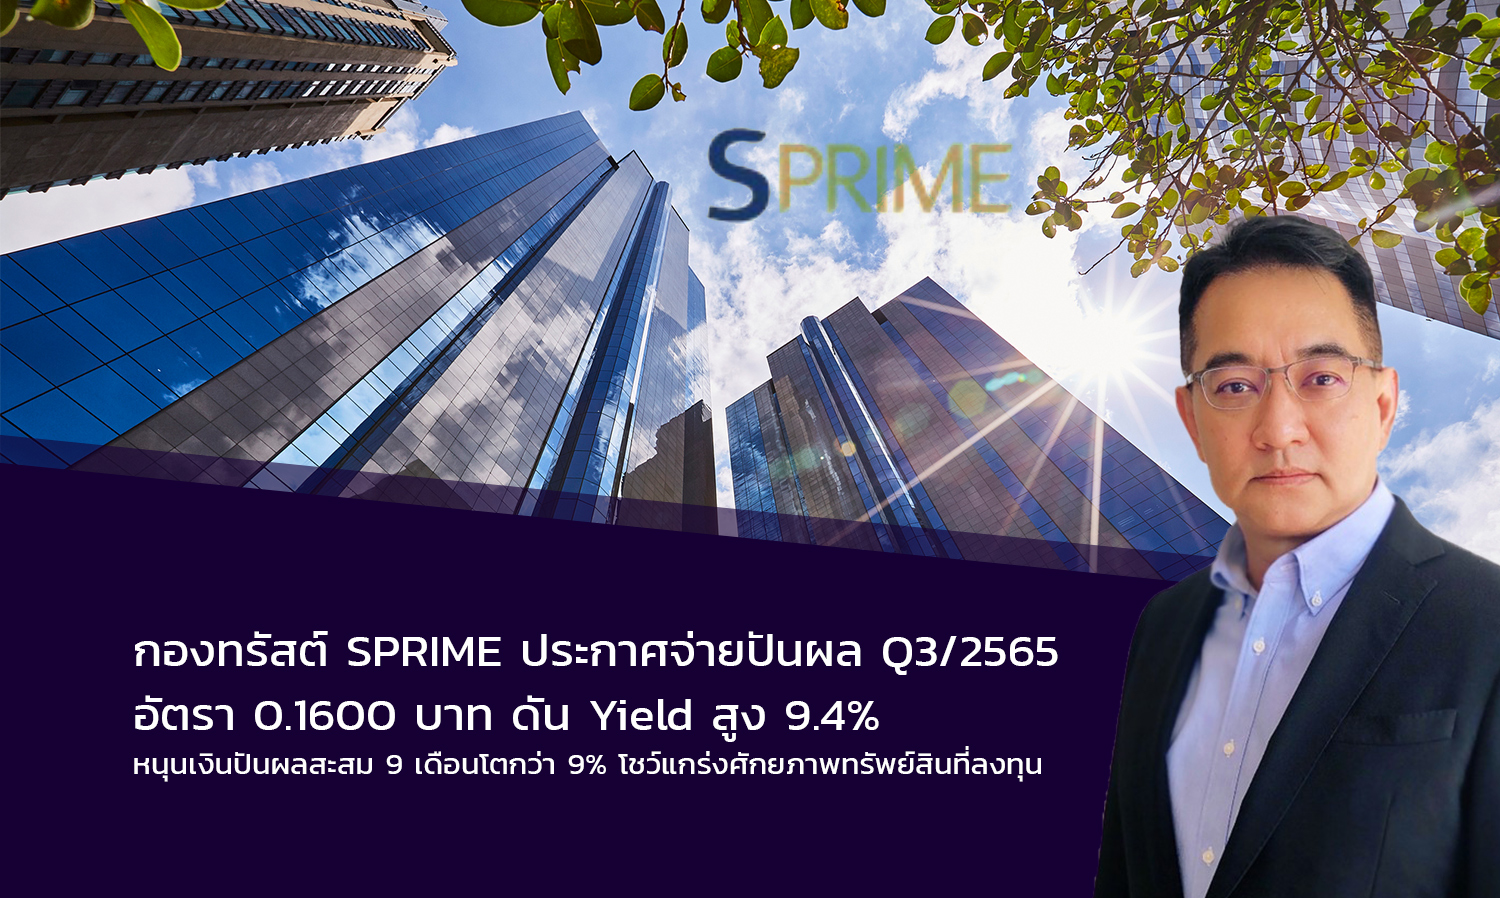 กองทรัสต์ SPRIME ประกาศจ่ายปันผล Q3/2565 อัตรา 0.1600 บาท ดัน Yield สูง 9.4%  หนุนเงินปันผลสะสม 9 เดือนโตกว่า 9%  โชว์แกร่งศักยภาพทรัพย์สินที่ลงทุน